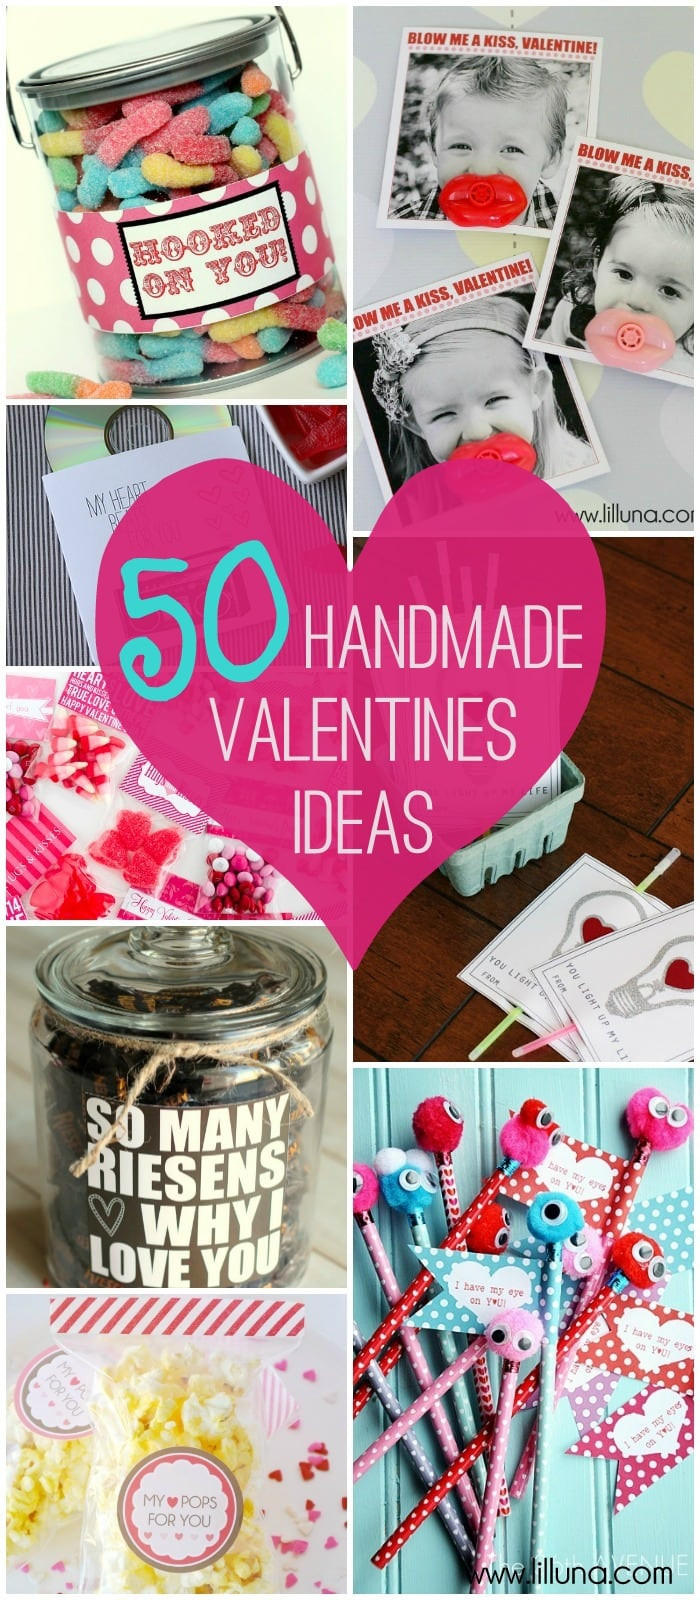 Cool Valentine Gift Ideas
 Valentines Ideas